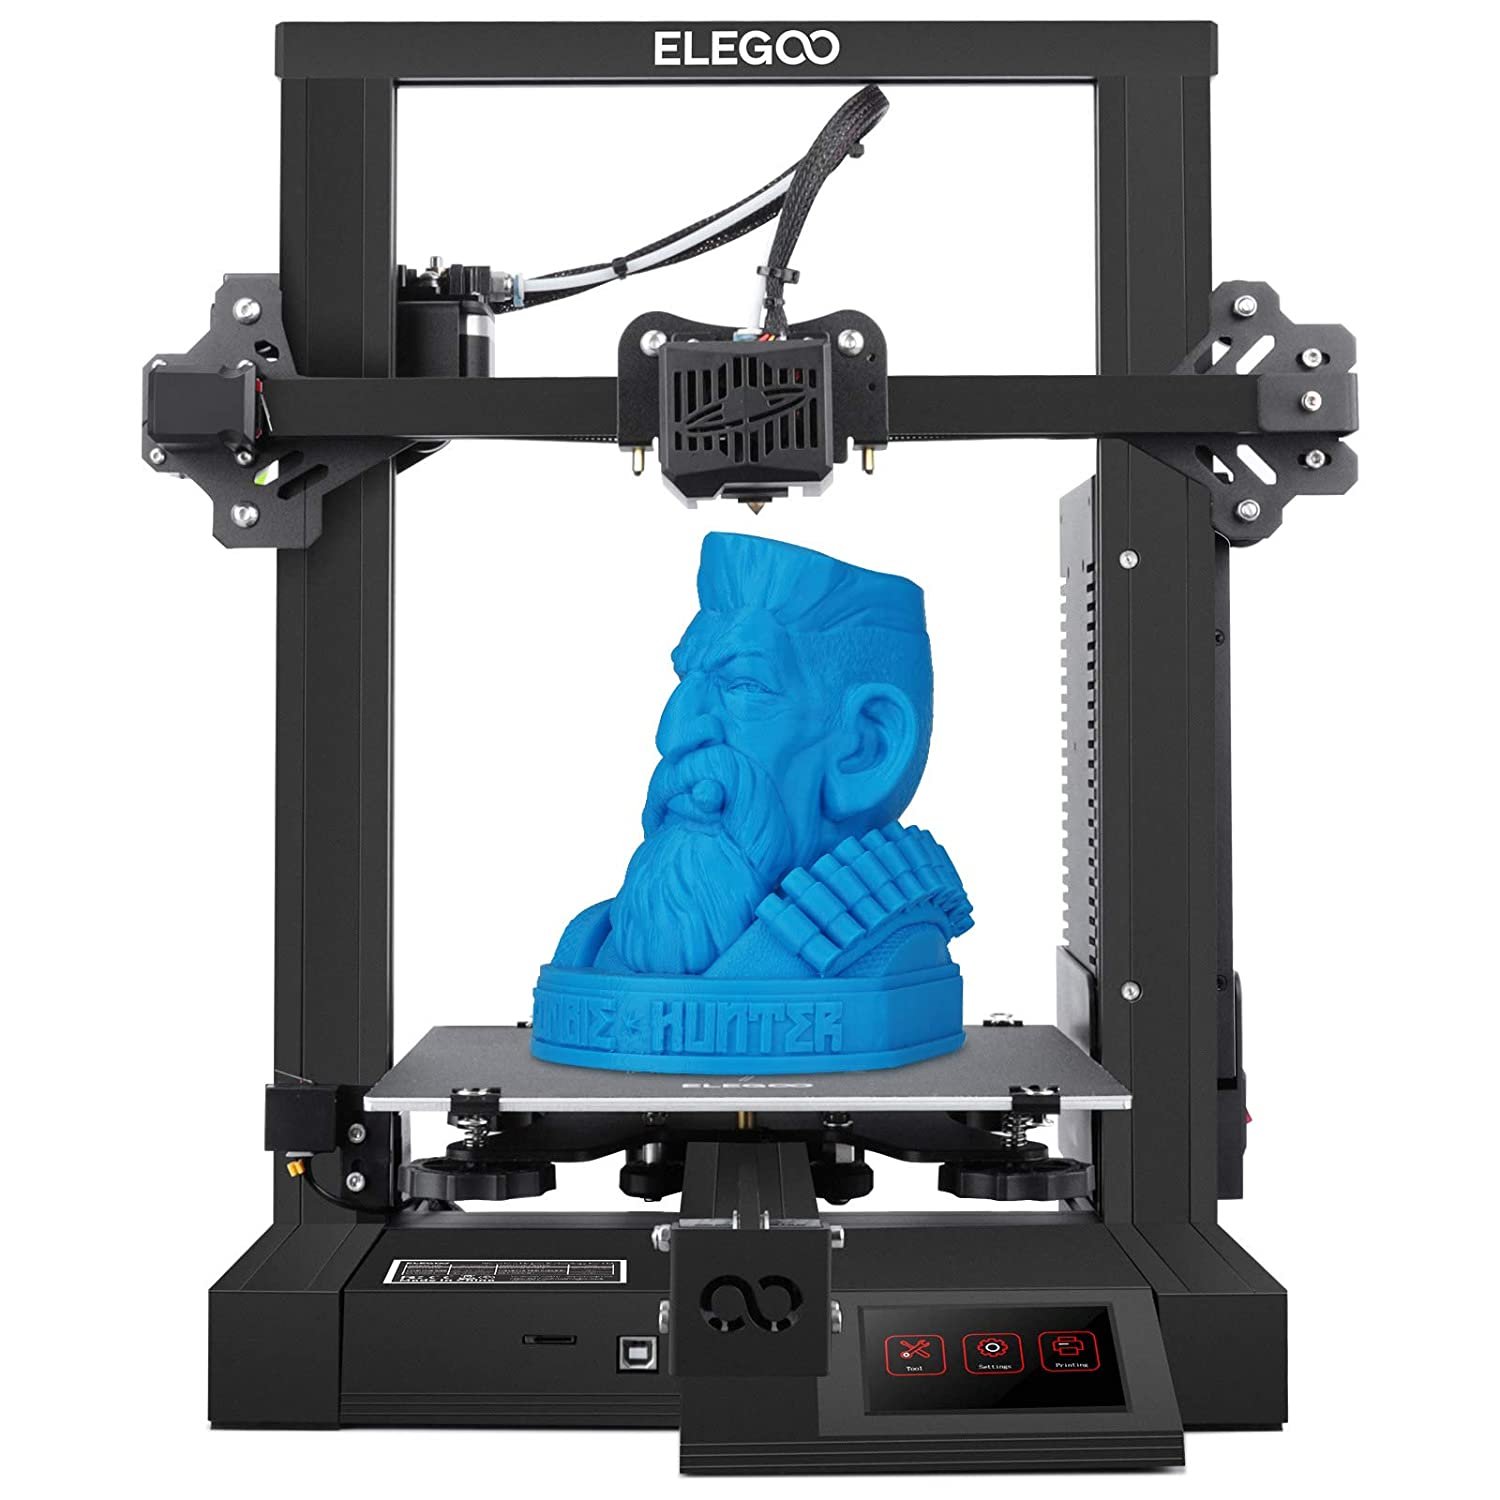 Quelle imprimante pour débuter dans l'impression 3D ? — La